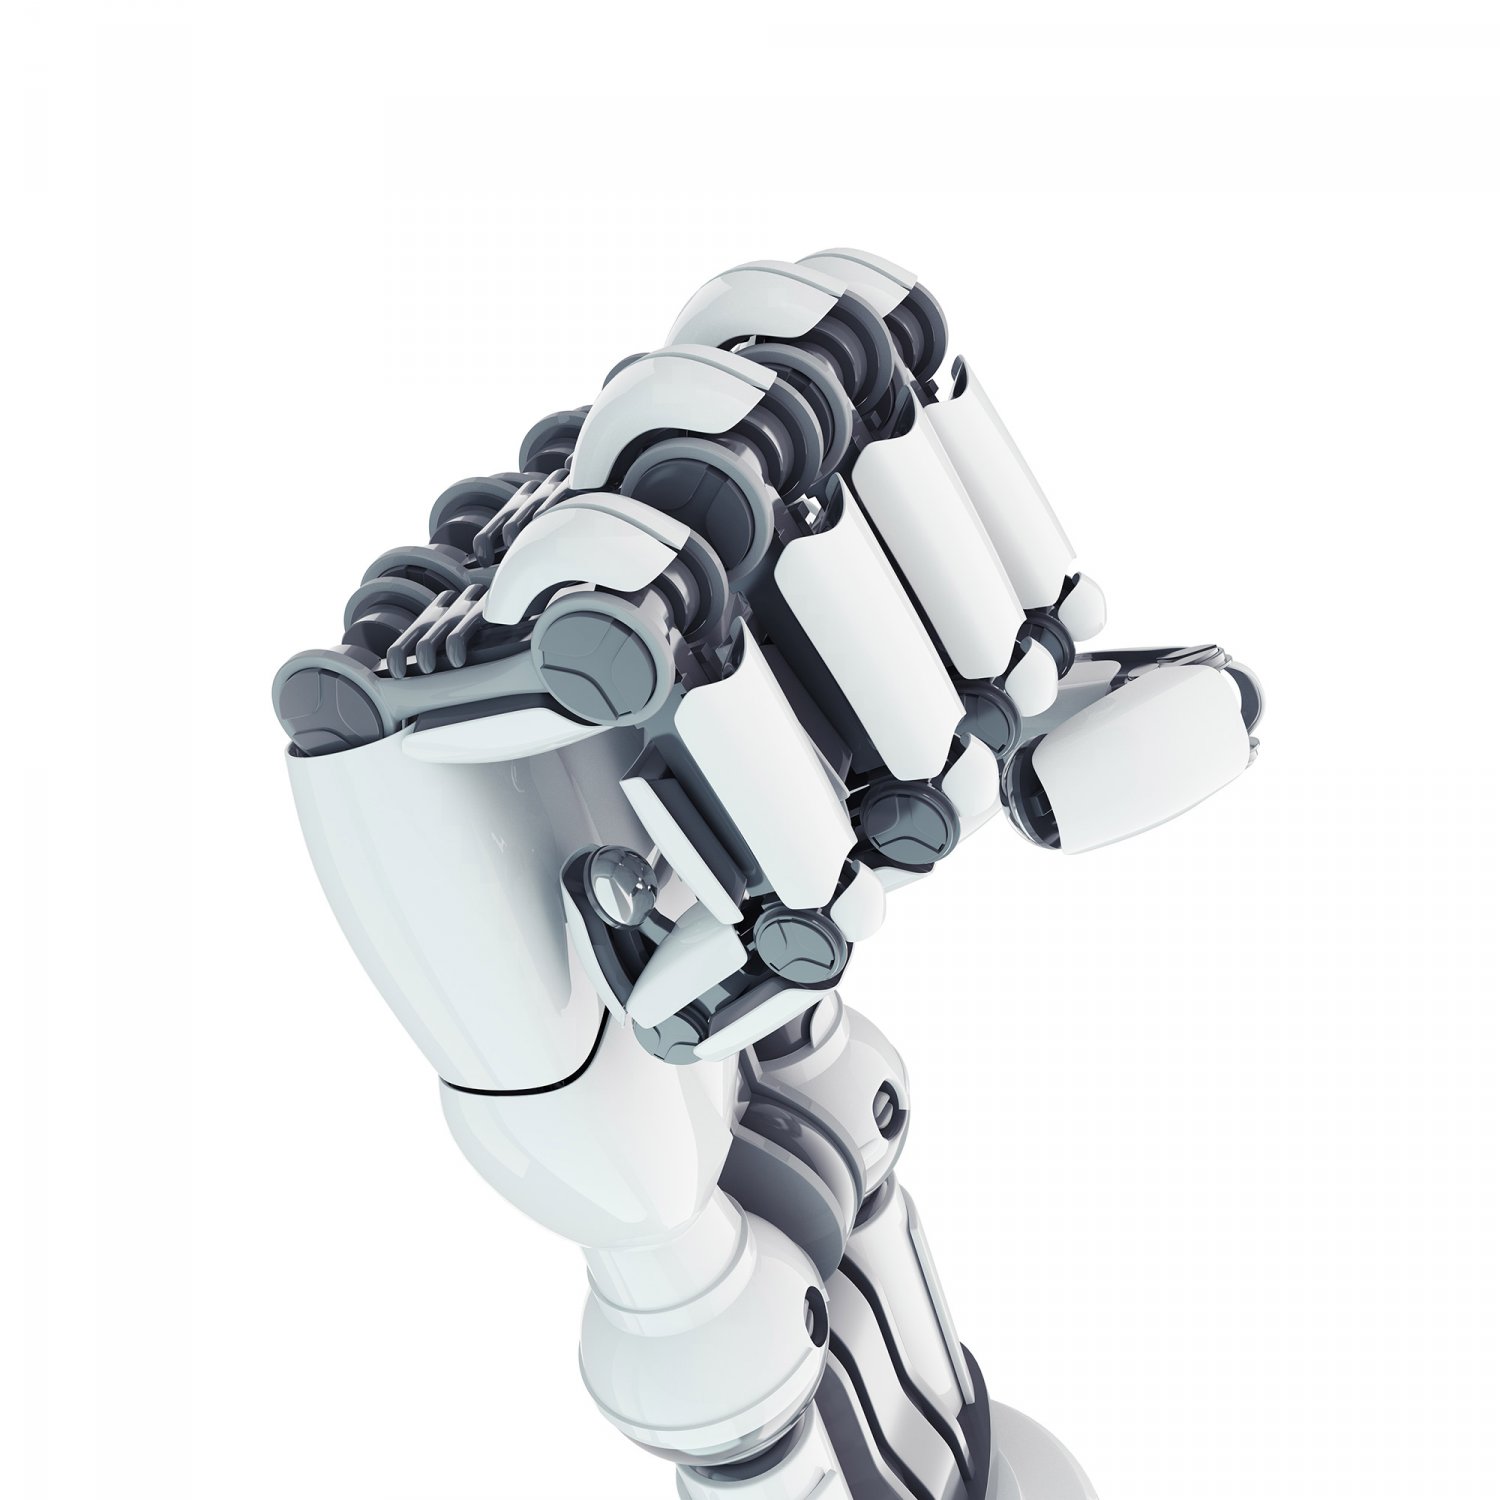 robot hand 3D Model in Robot